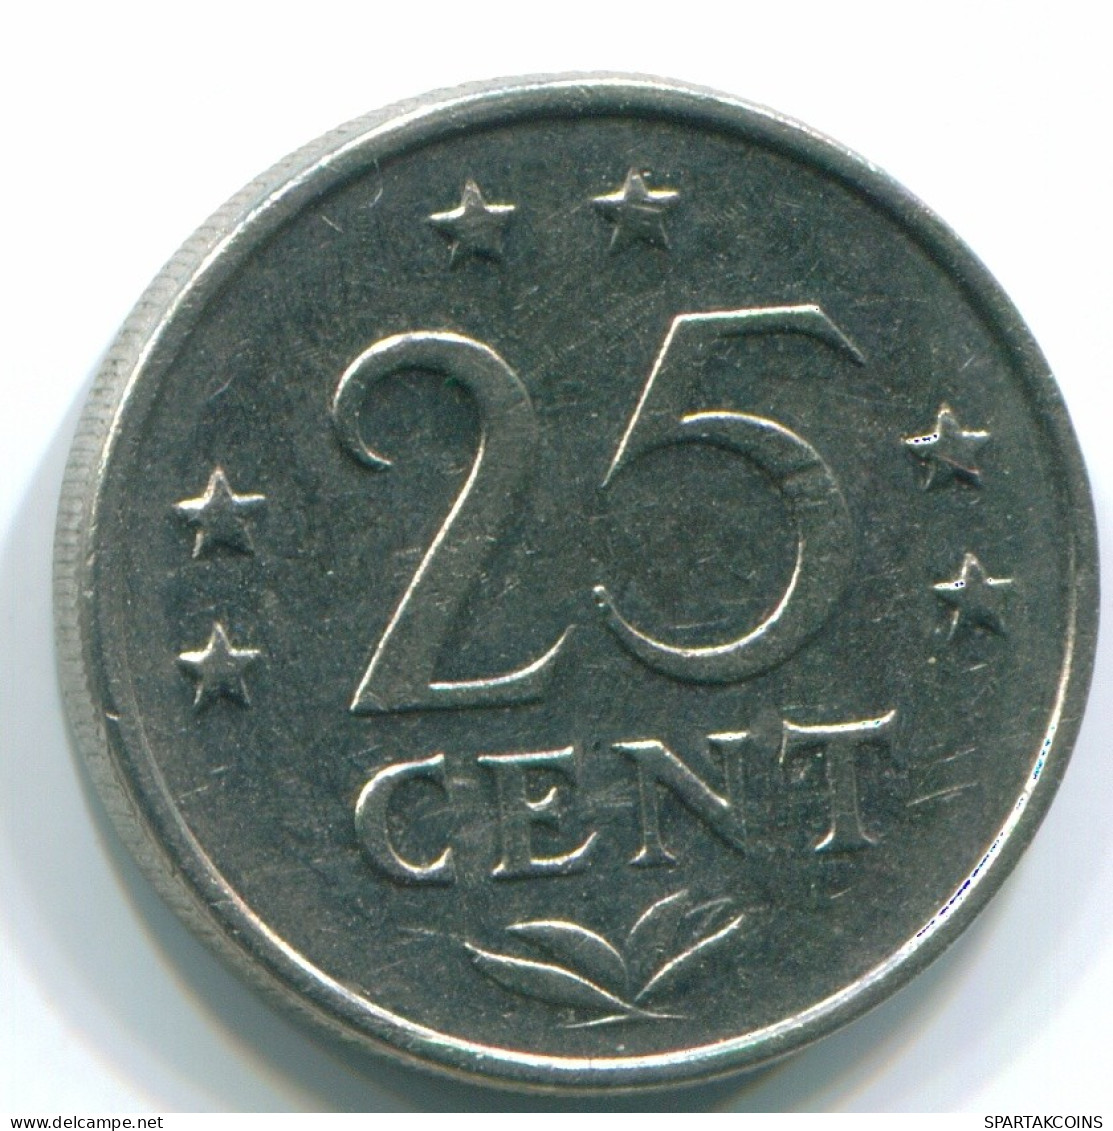 25 CENTS 1971 NIEDERLÄNDISCHE ANTILLEN Nickel Koloniale Münze #S11569.D.A - Niederländische Antillen